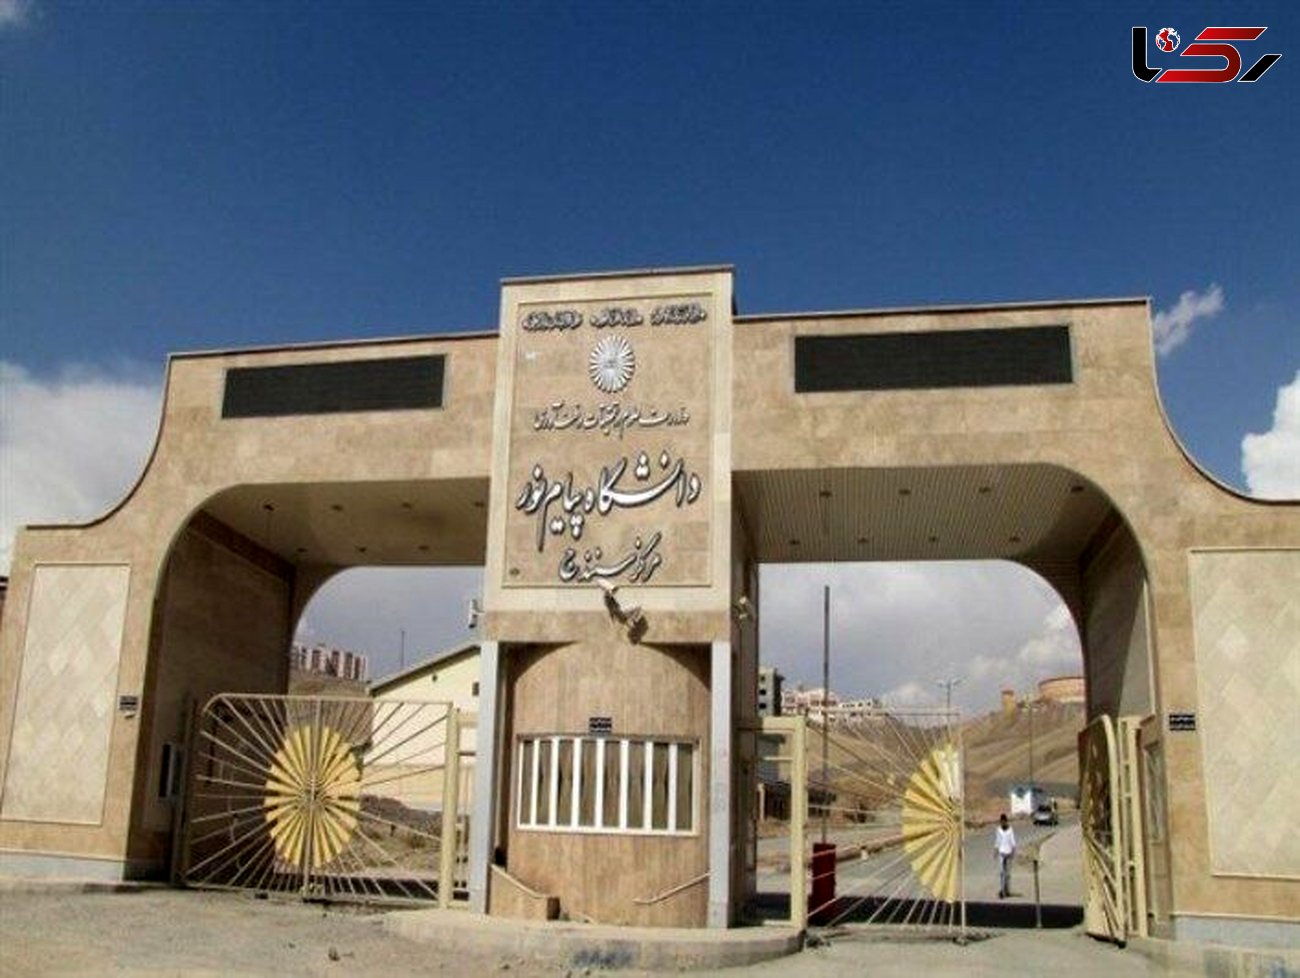 ۹ رشته تحصیلی جدید در دانشگاه پیام نور کردستان ایجاد شد